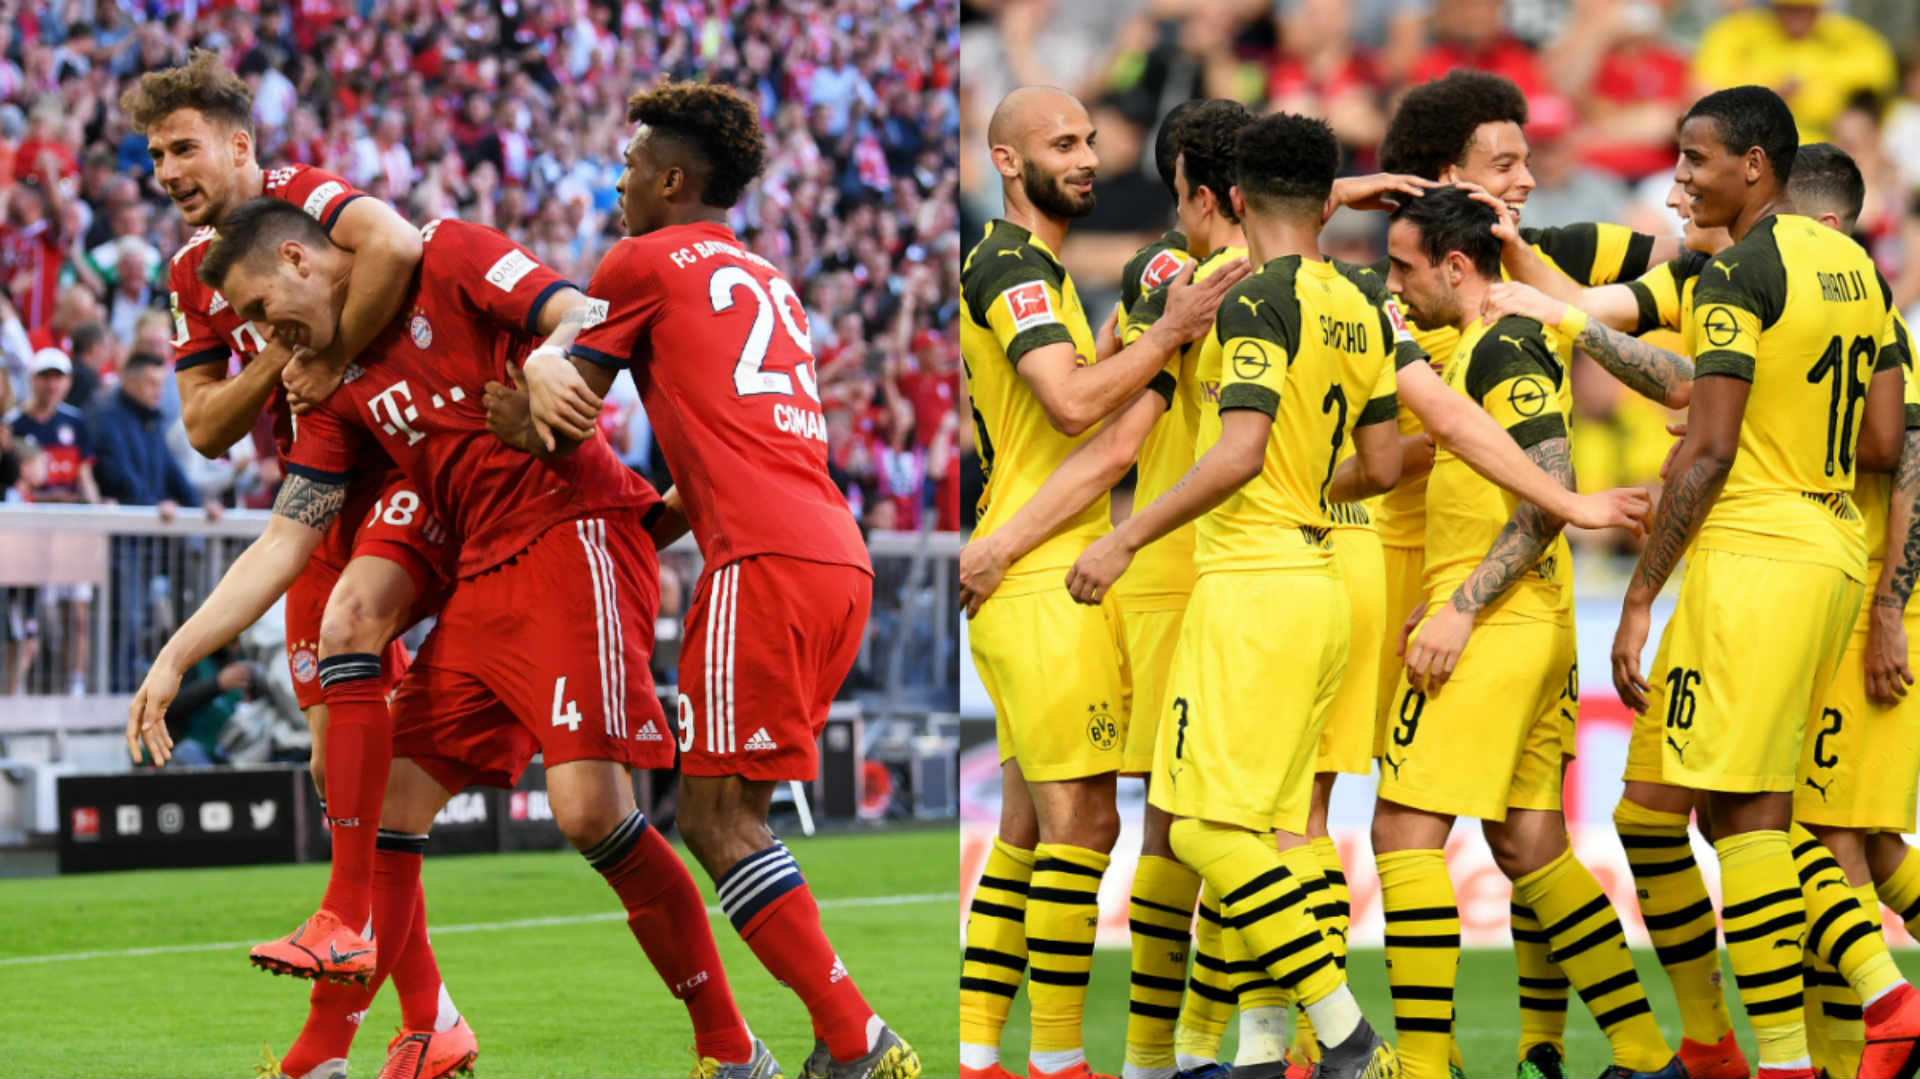 Programm & Aufstellung Supercup 2017 Borussia Dortmund Bayern München 